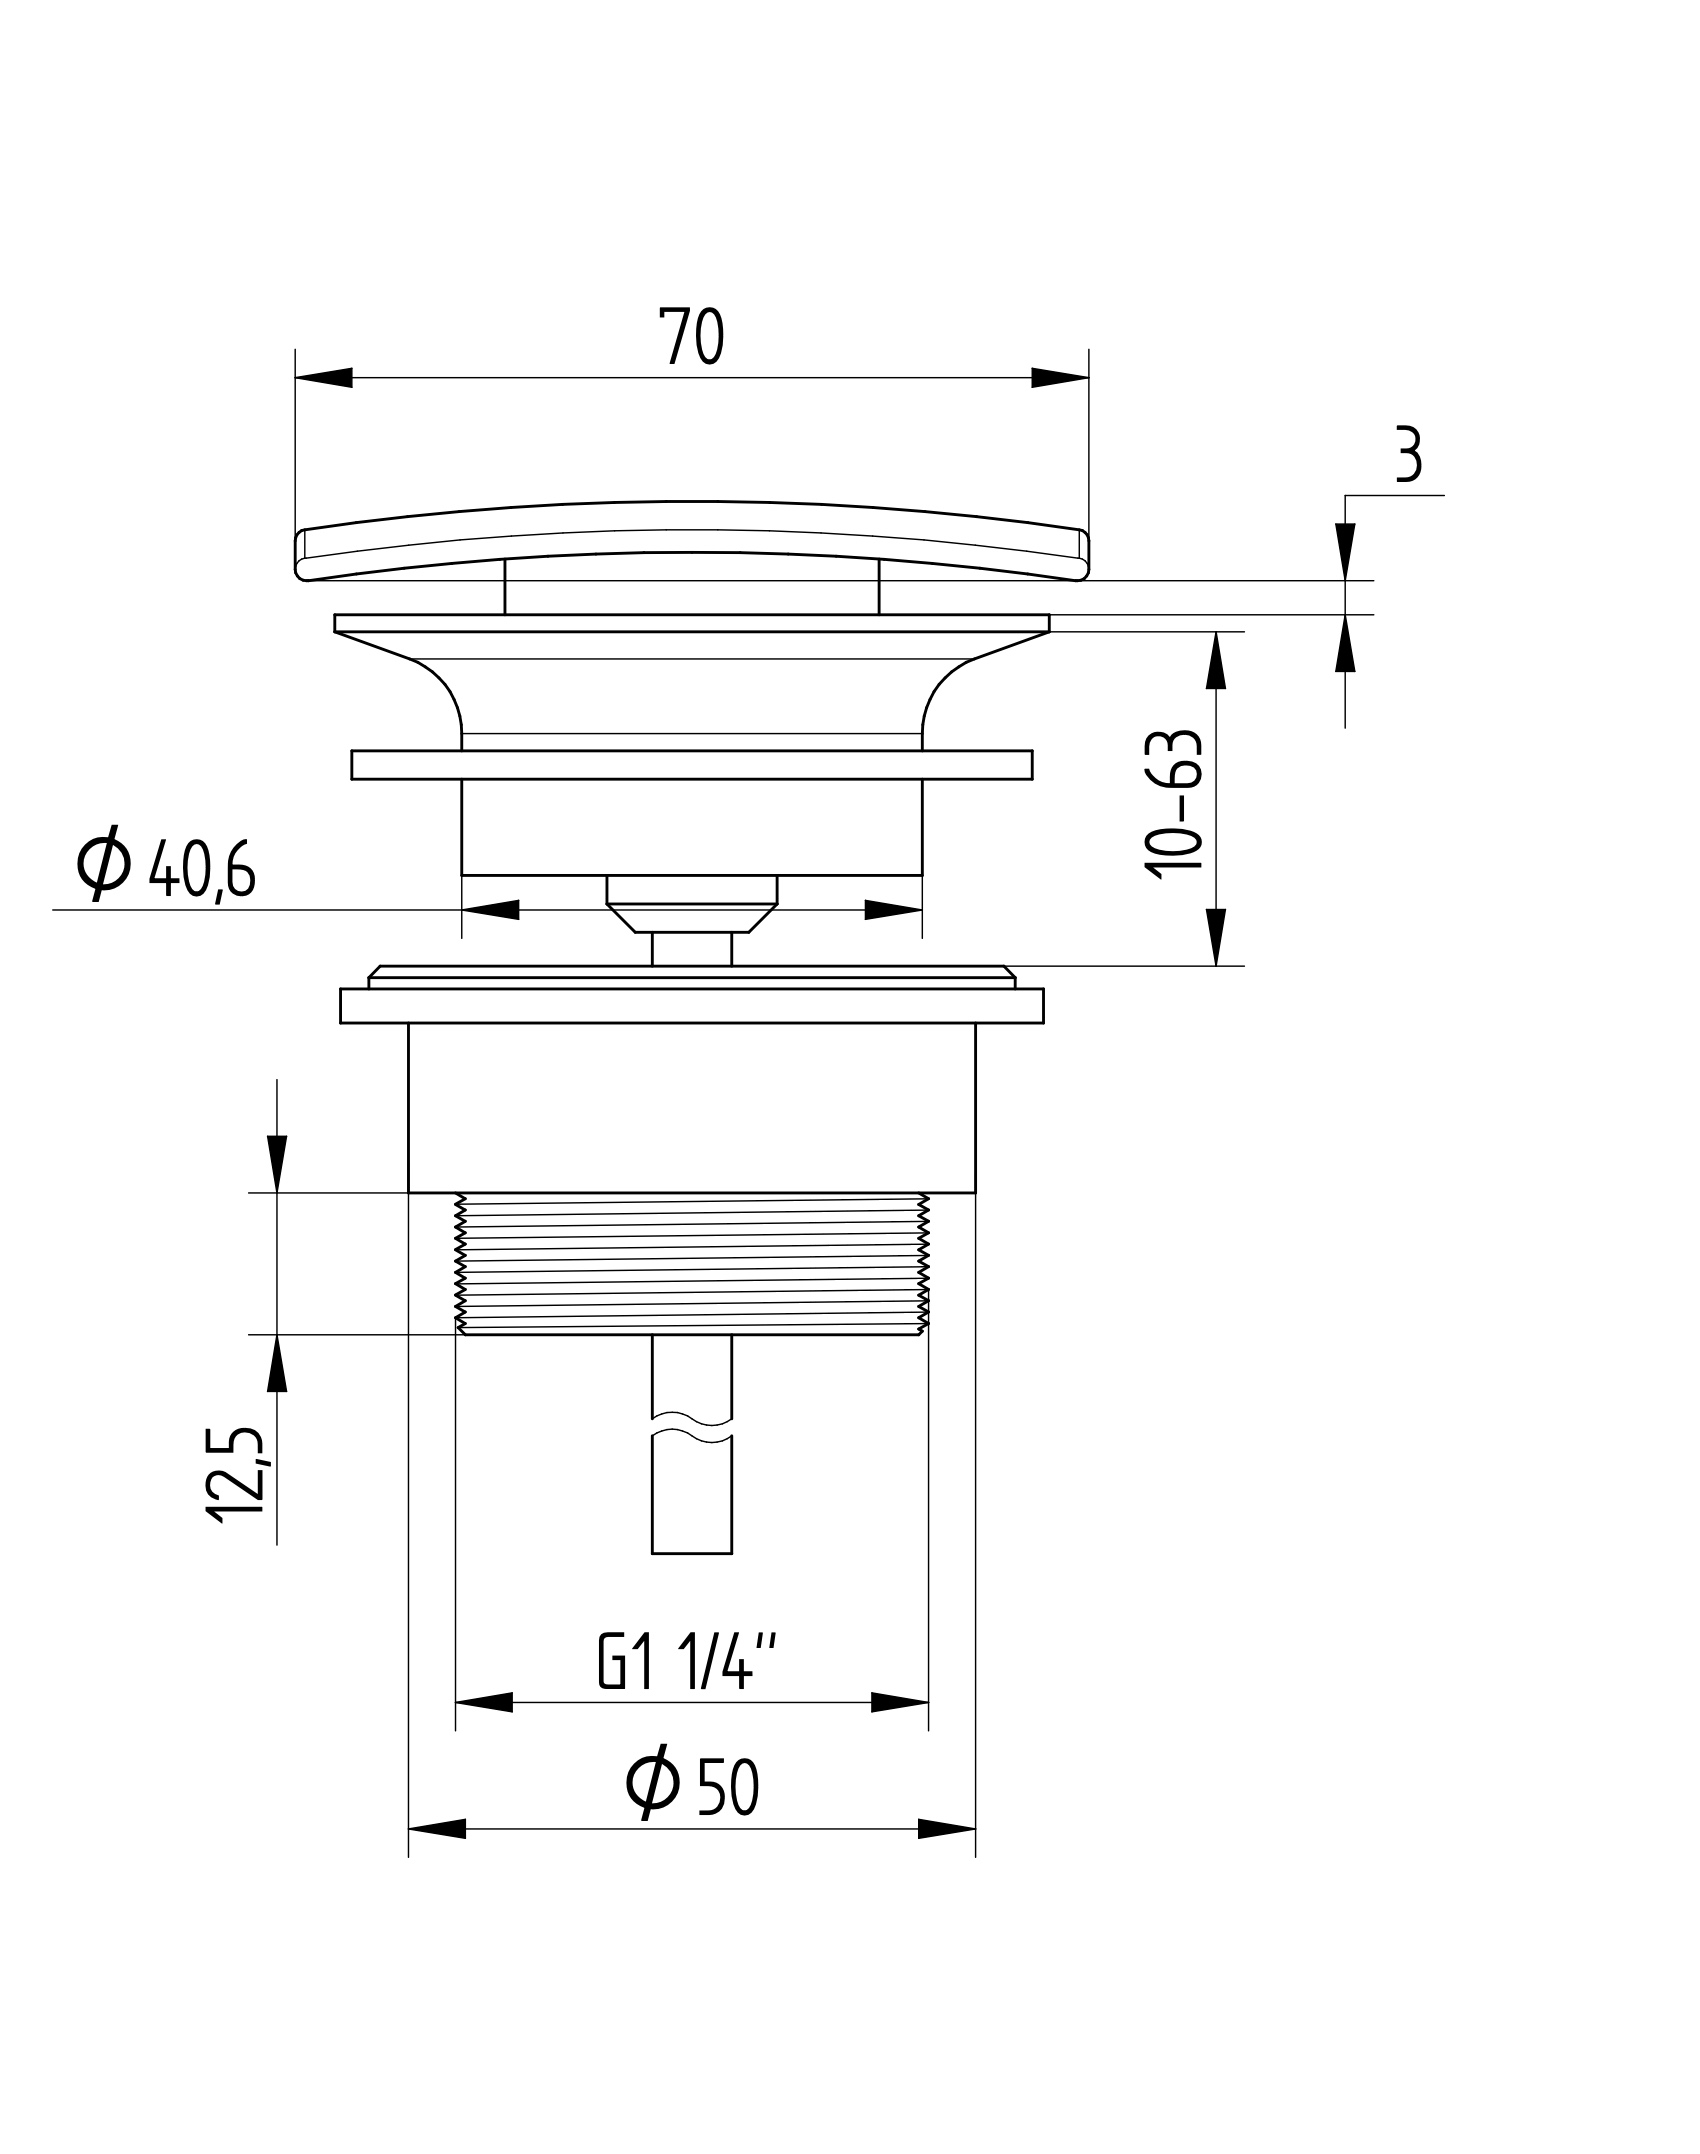 Avenraius Design-Schaftventil 1 ¼" eckig ohne Verschluss, Ø 70 mm (900 4205 010)